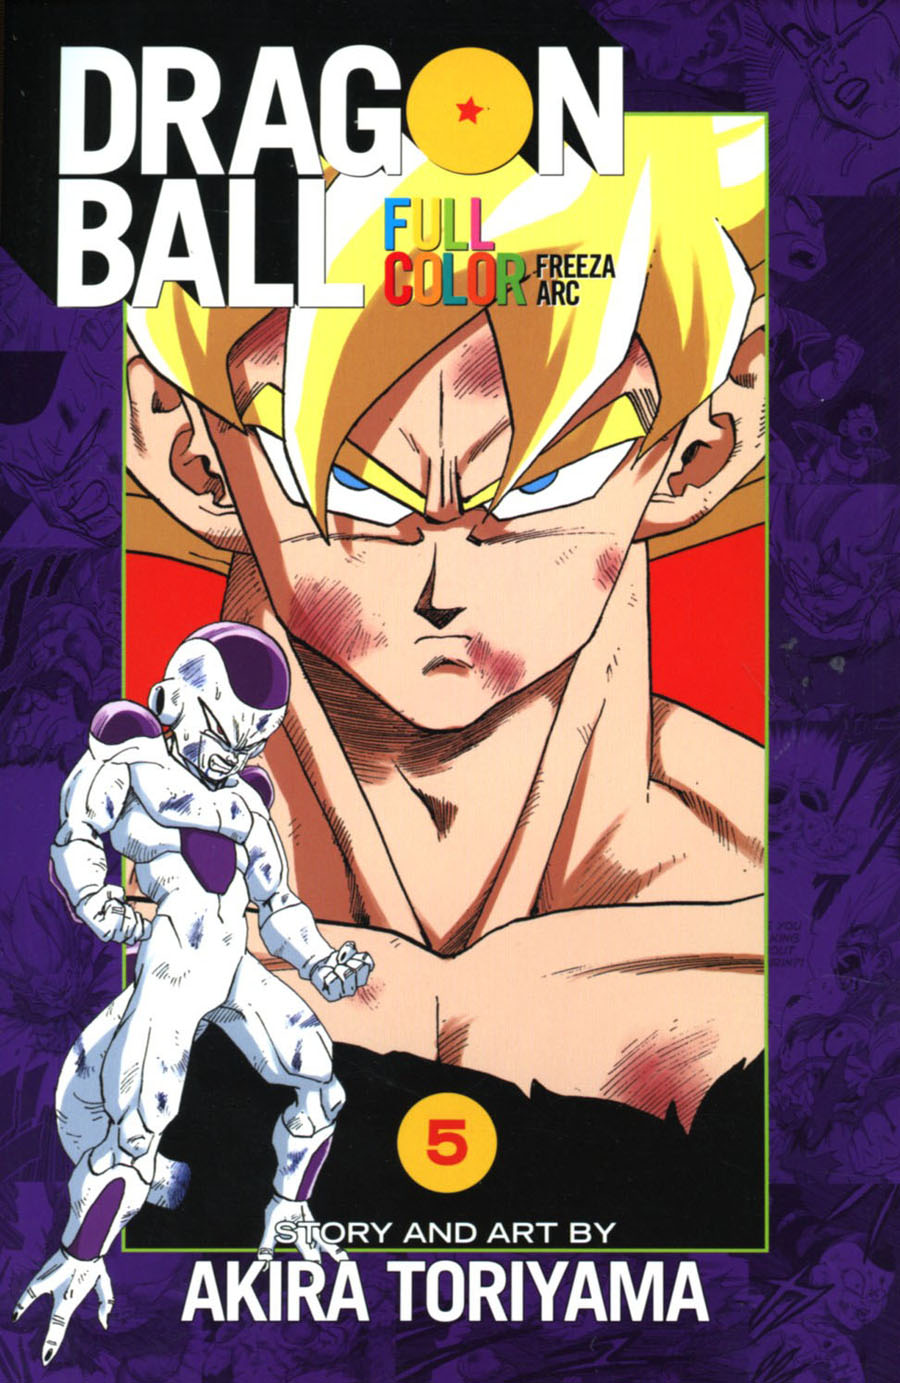 Dragon Ball Full Color Freeza Arc Vol 5 TP